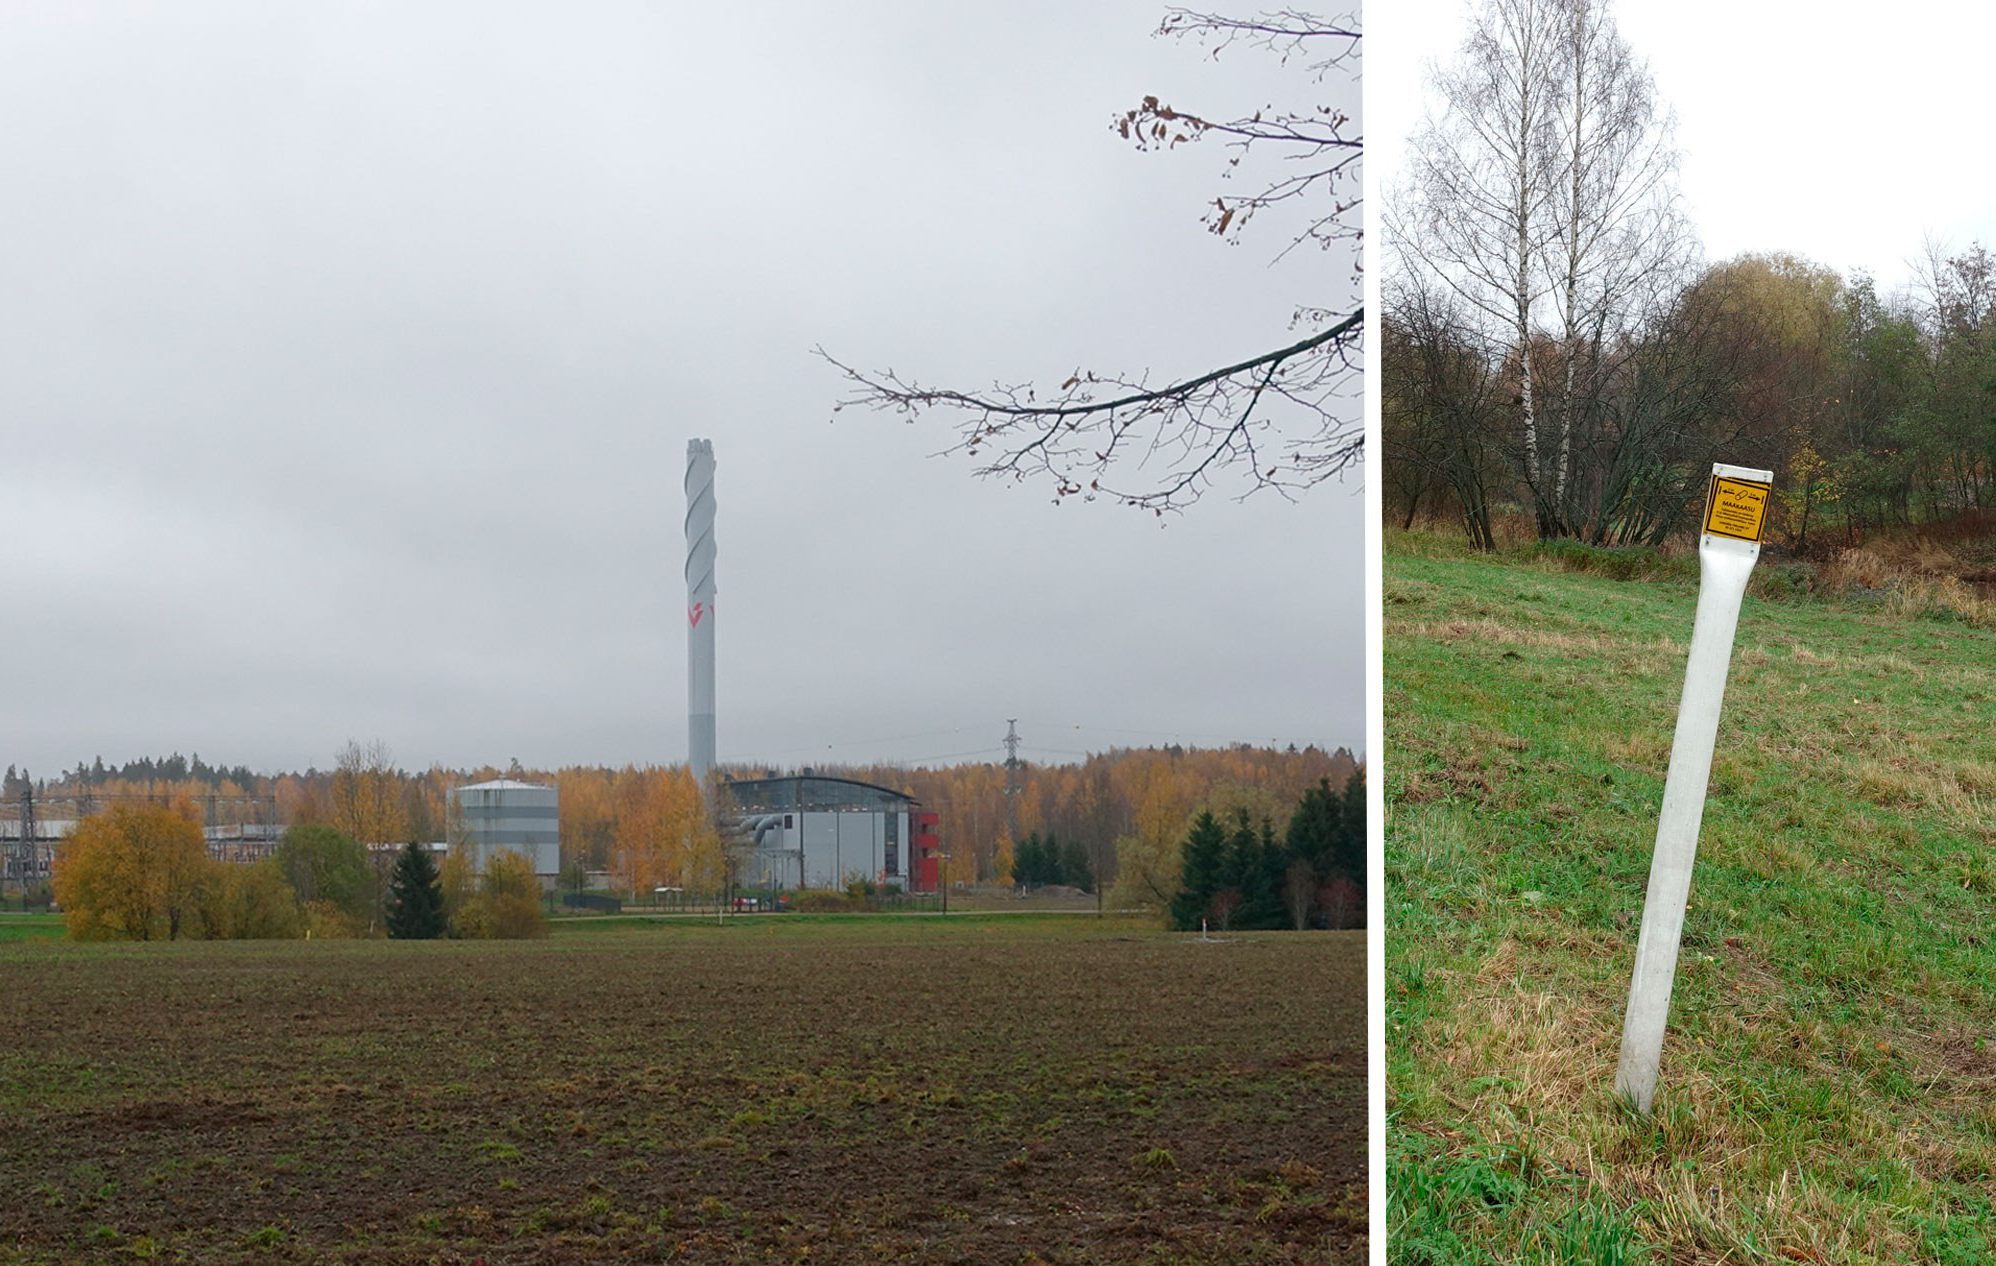 Yhdistetty kuva. Vasemmalla lämpövoimala peltomaisemassa. Oikealla maakaasuputken sijainnista kertova metallinen pylväs puiston nurmikolla.